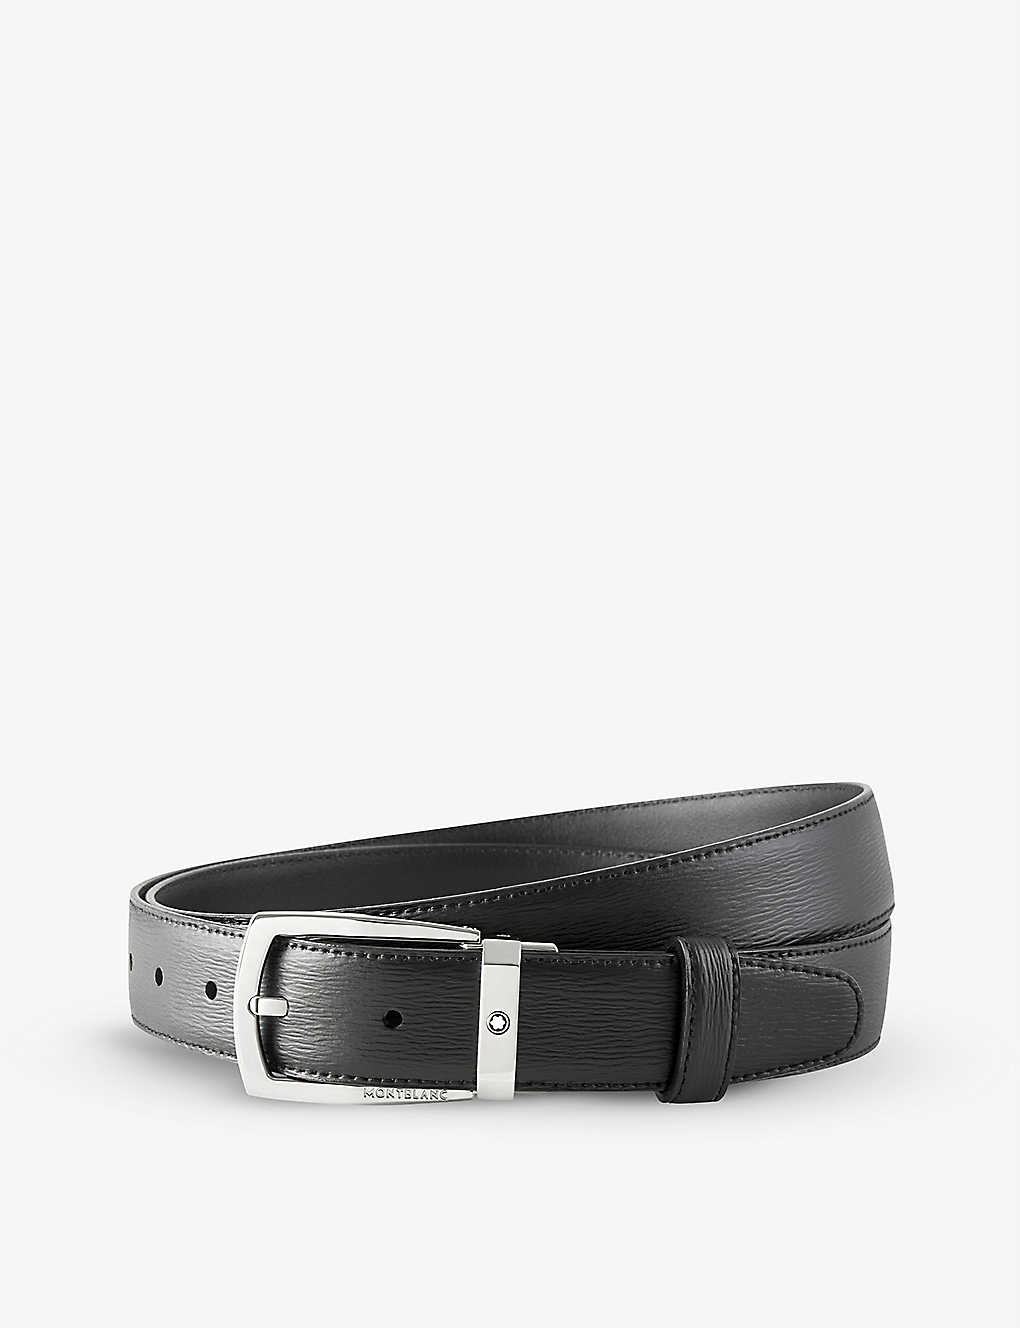 Shop Montblanc Men's Trapeze Leather Belt